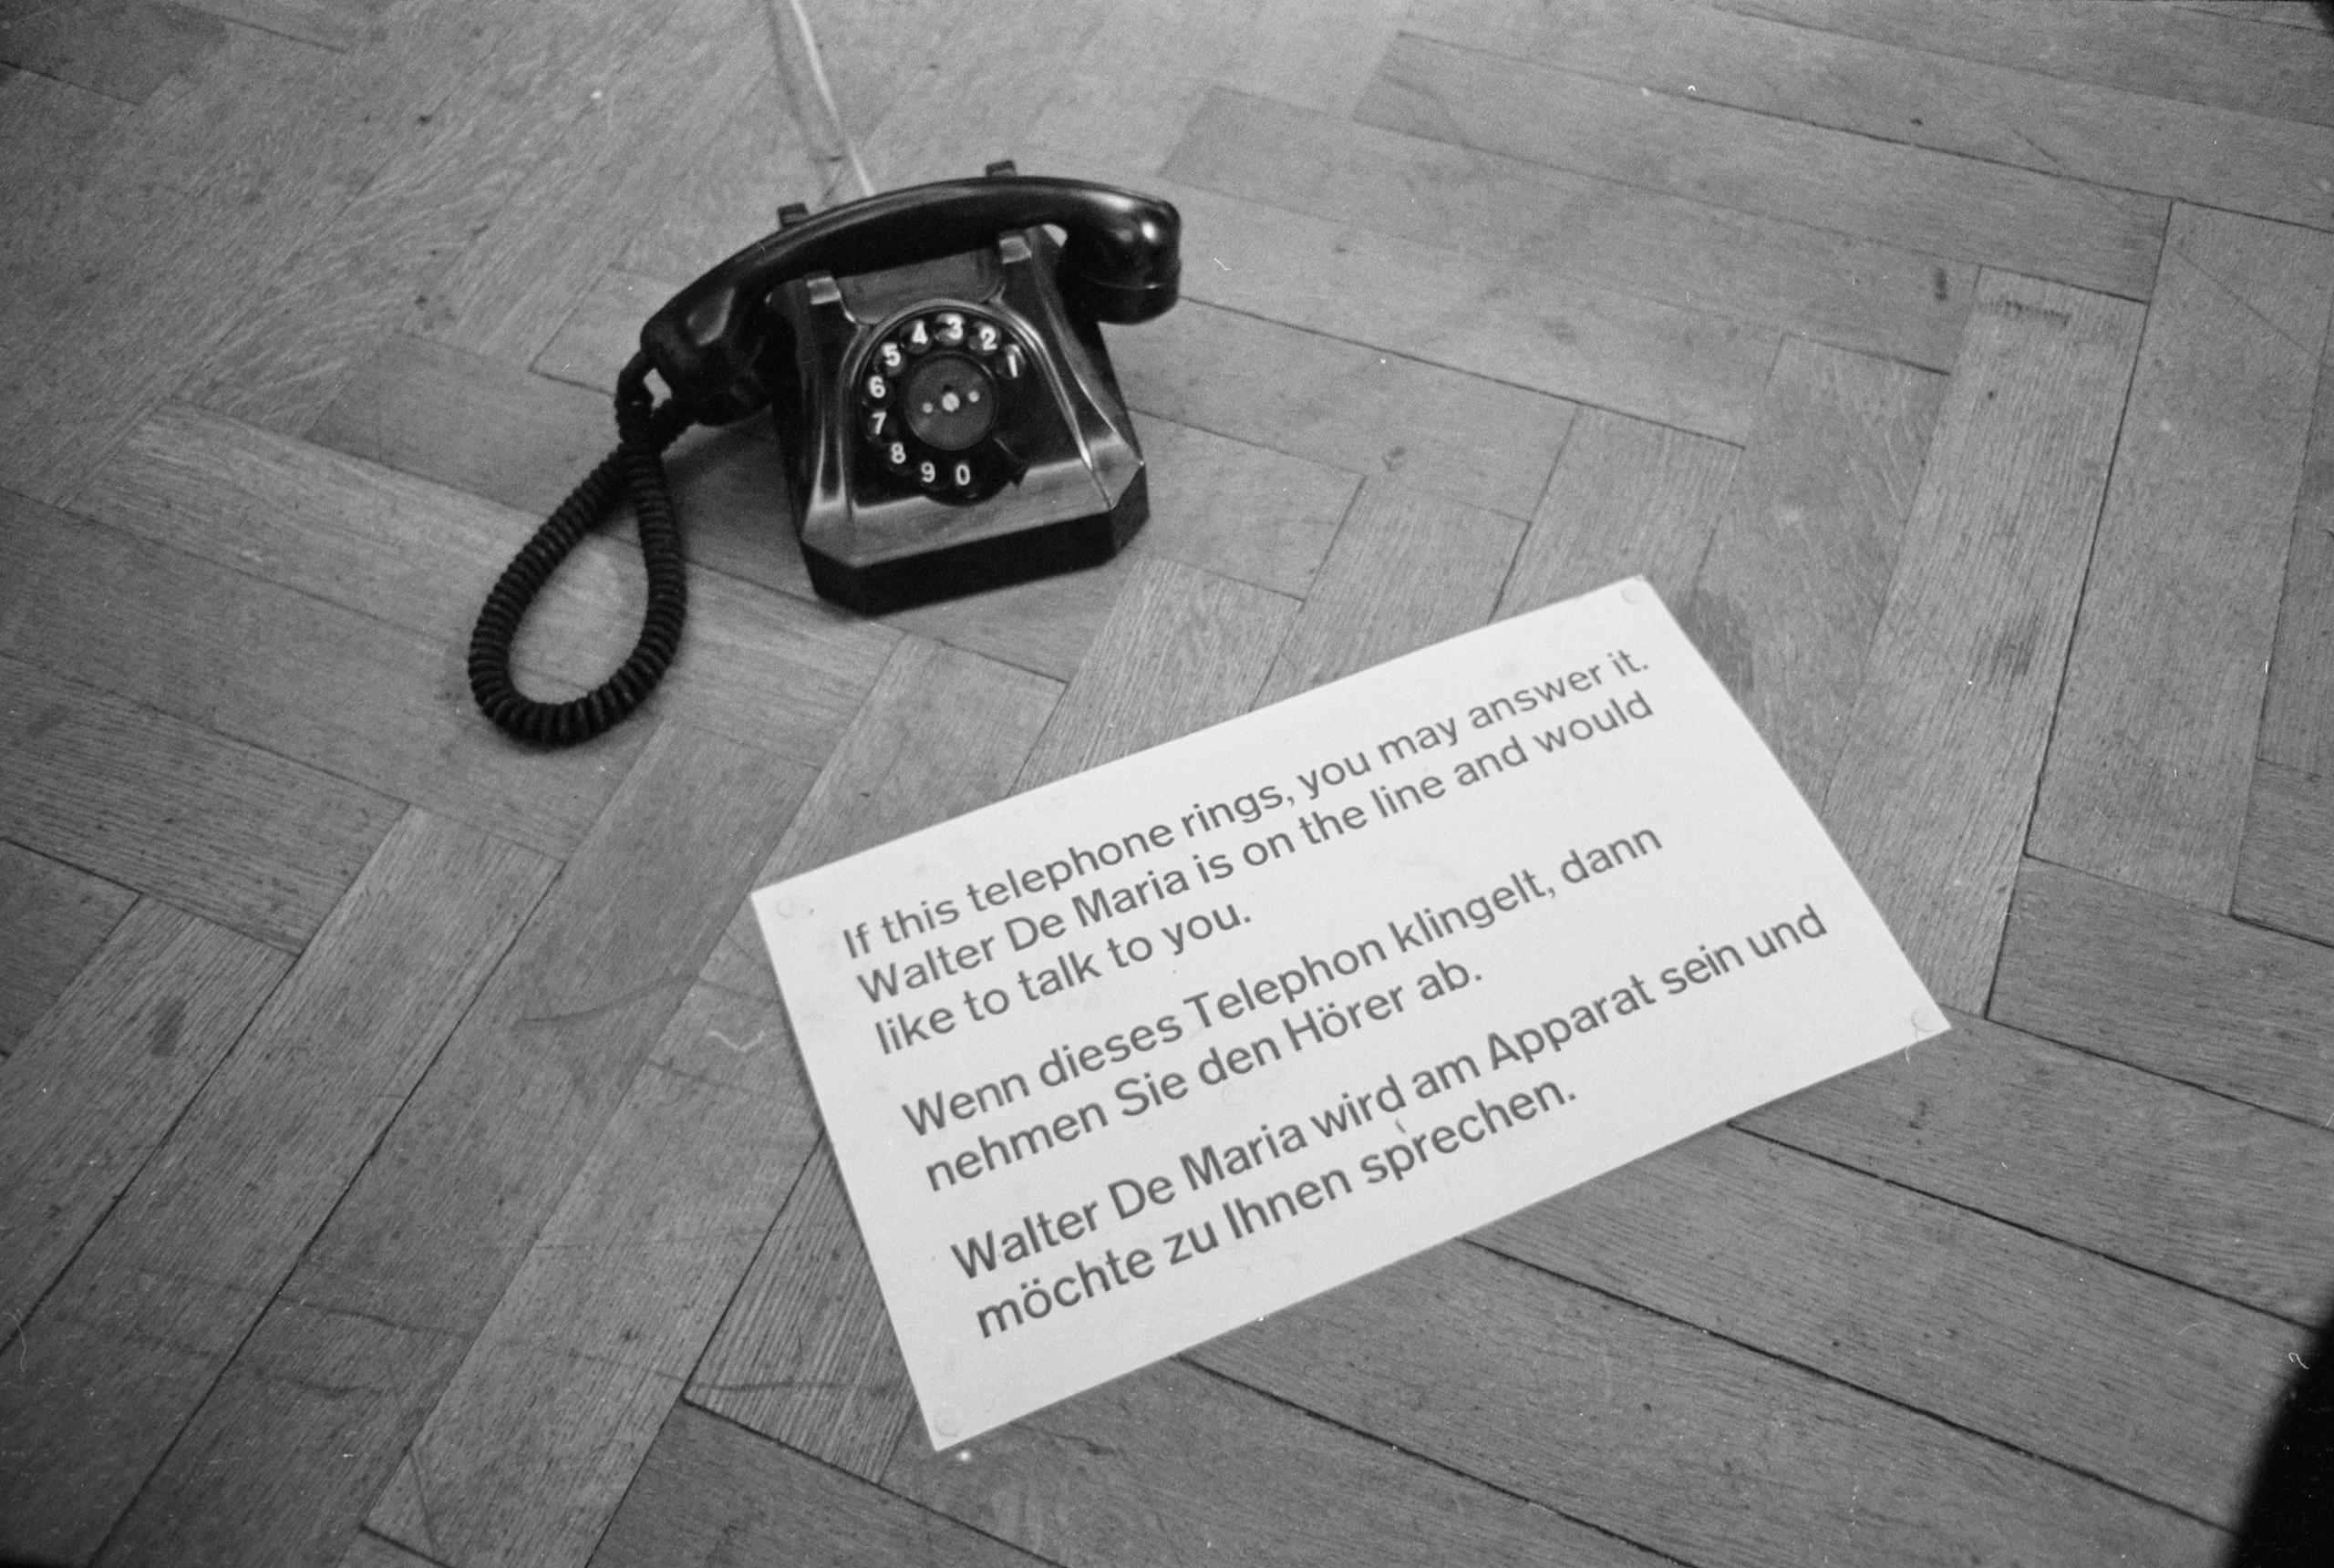 Aparelho antigo de telefone com folheto exposto no chão